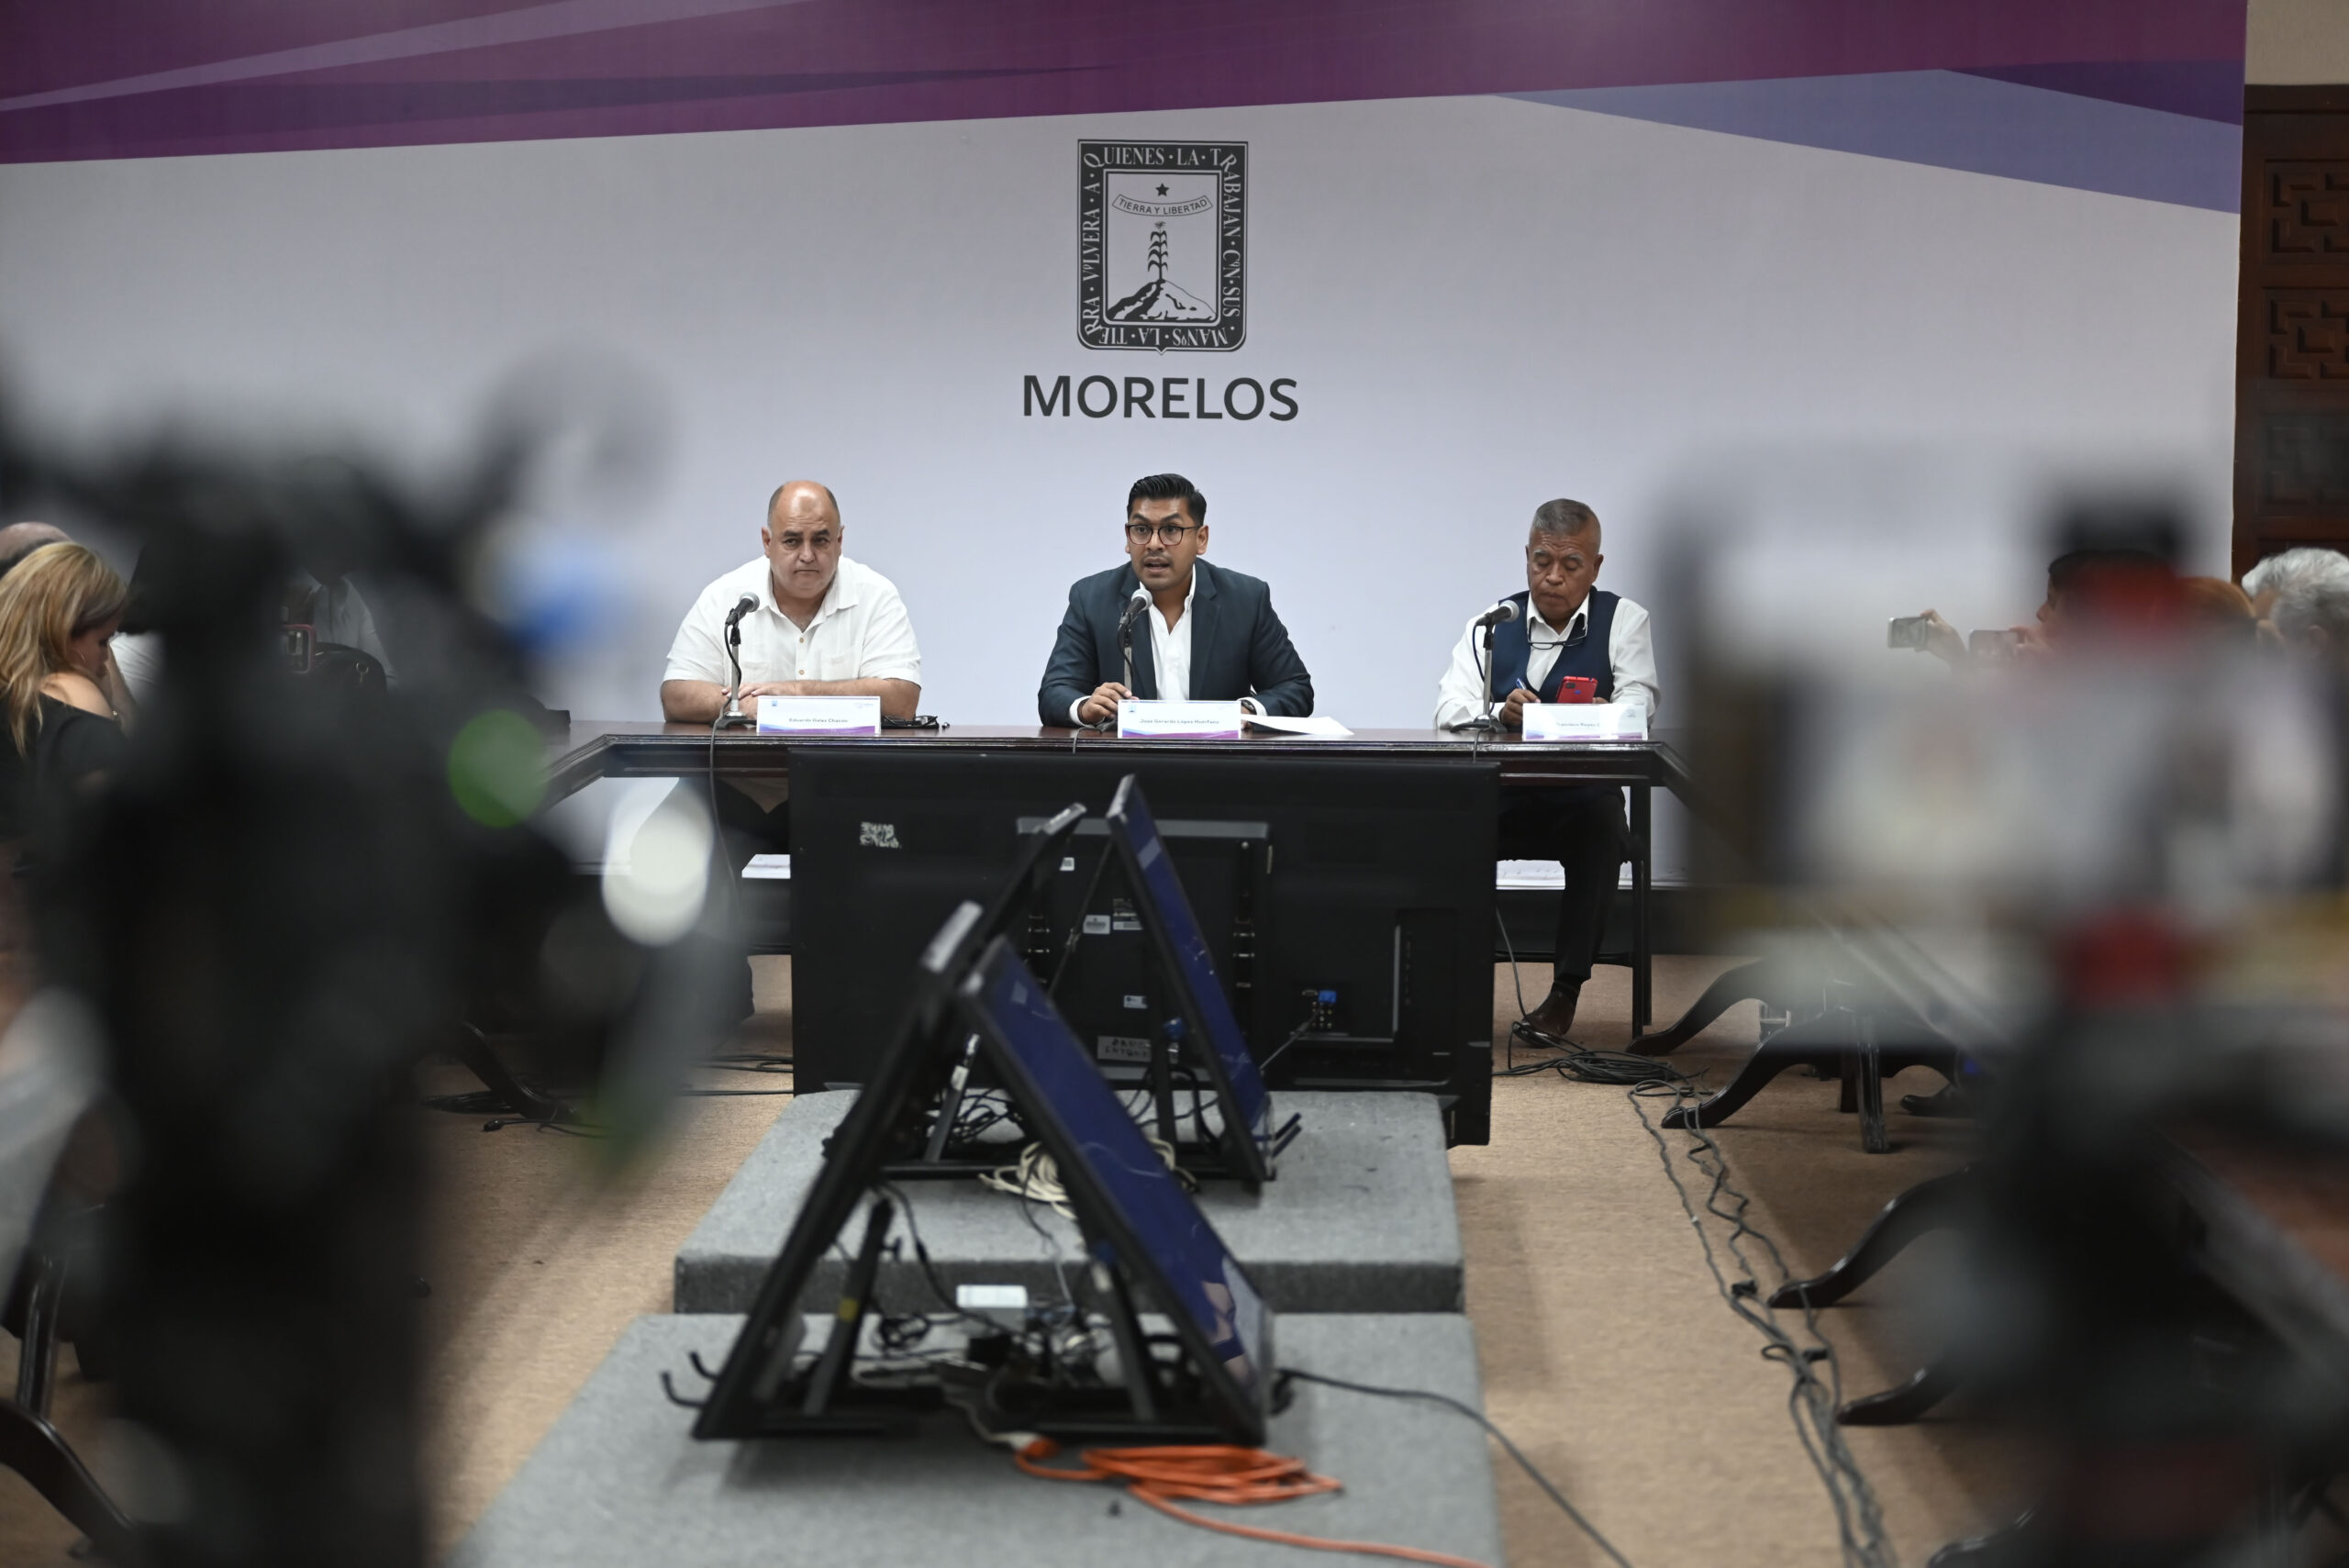 El poder ejecutivo del estado promete hablar con el Congreso local para garantizar la entrega de la documentación vehicular a la ciudadanía. Foto: Gobierno de Morelos